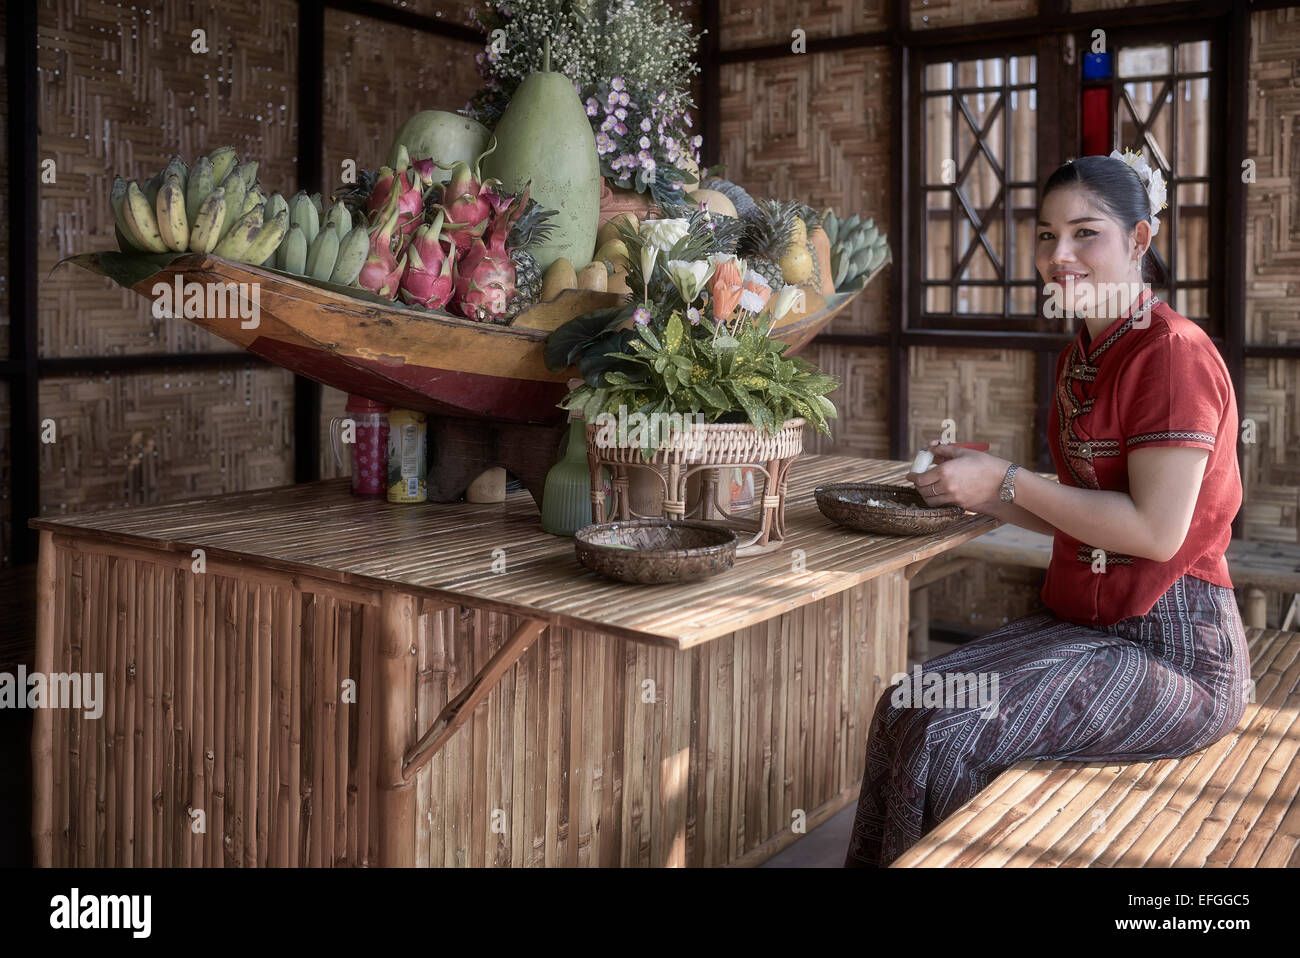 Thaïlande artisanat. Femme en robe traditionnelle avec exposition de fruits et de fleurs dans un centre artistique et culturel thaïlandais. Thaïlande S. E. Asie Banque D'Images